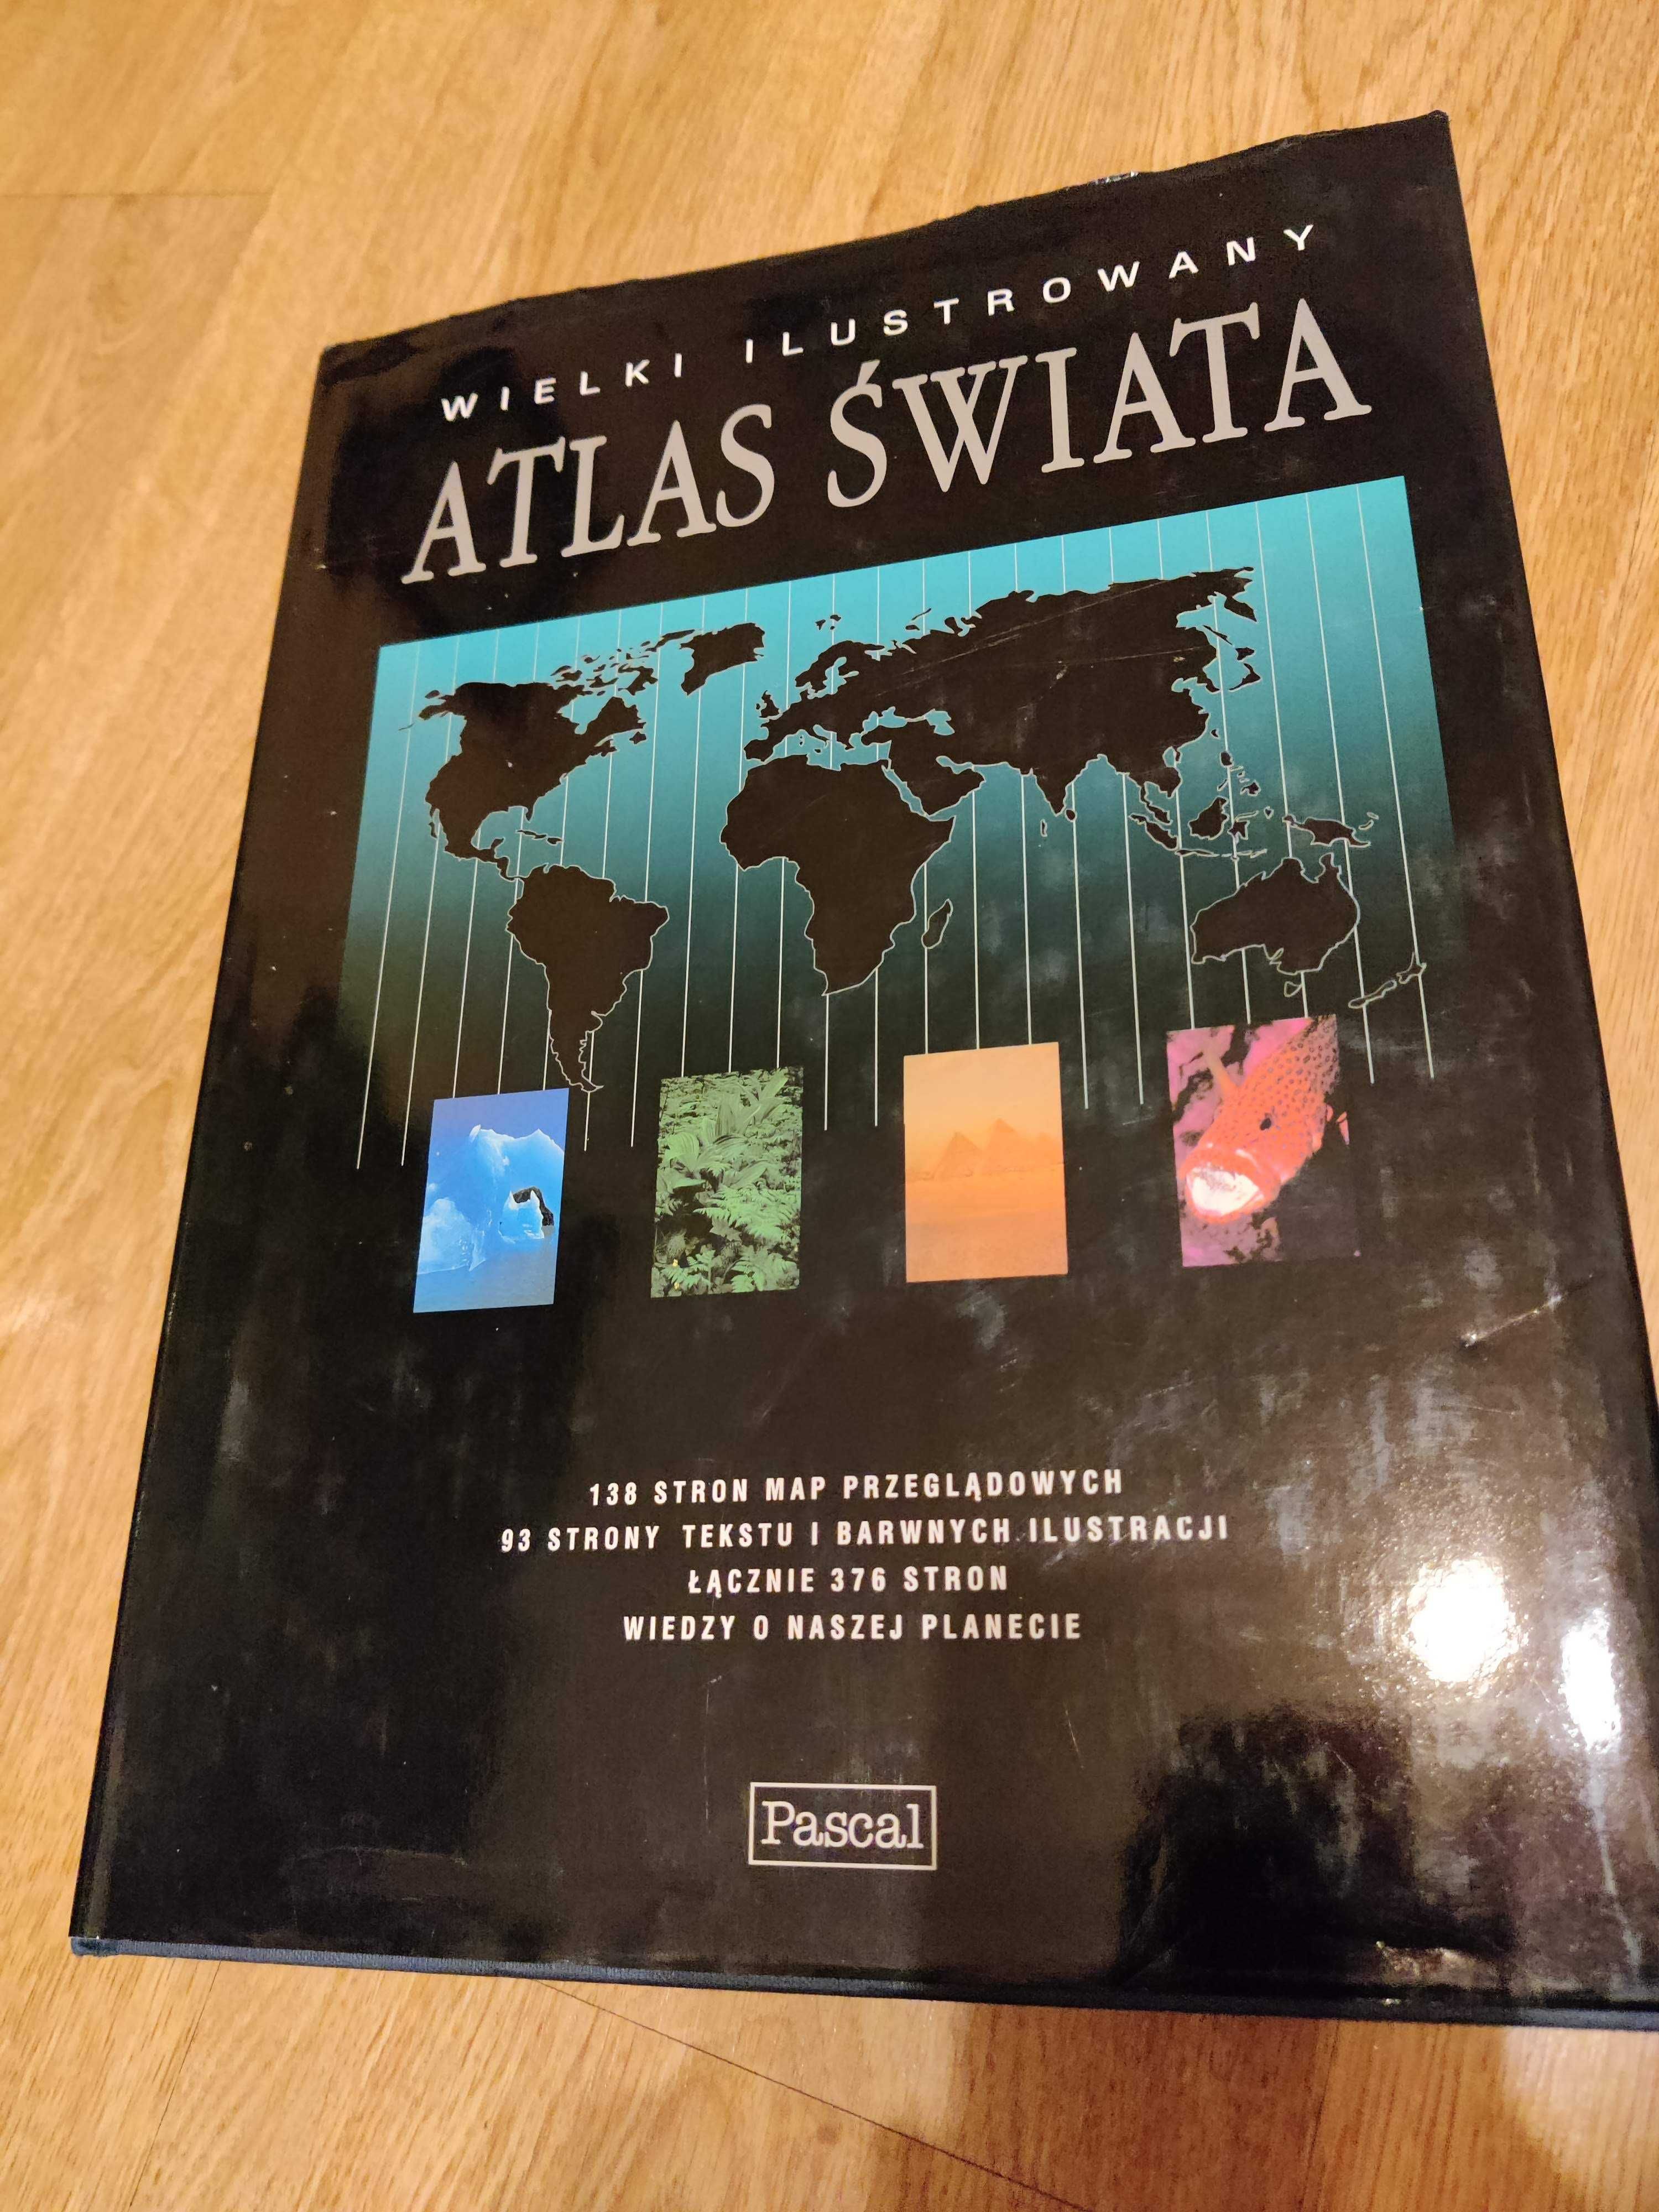 Wielki Ilustrowany Atlas Świata, Pascal, 2001